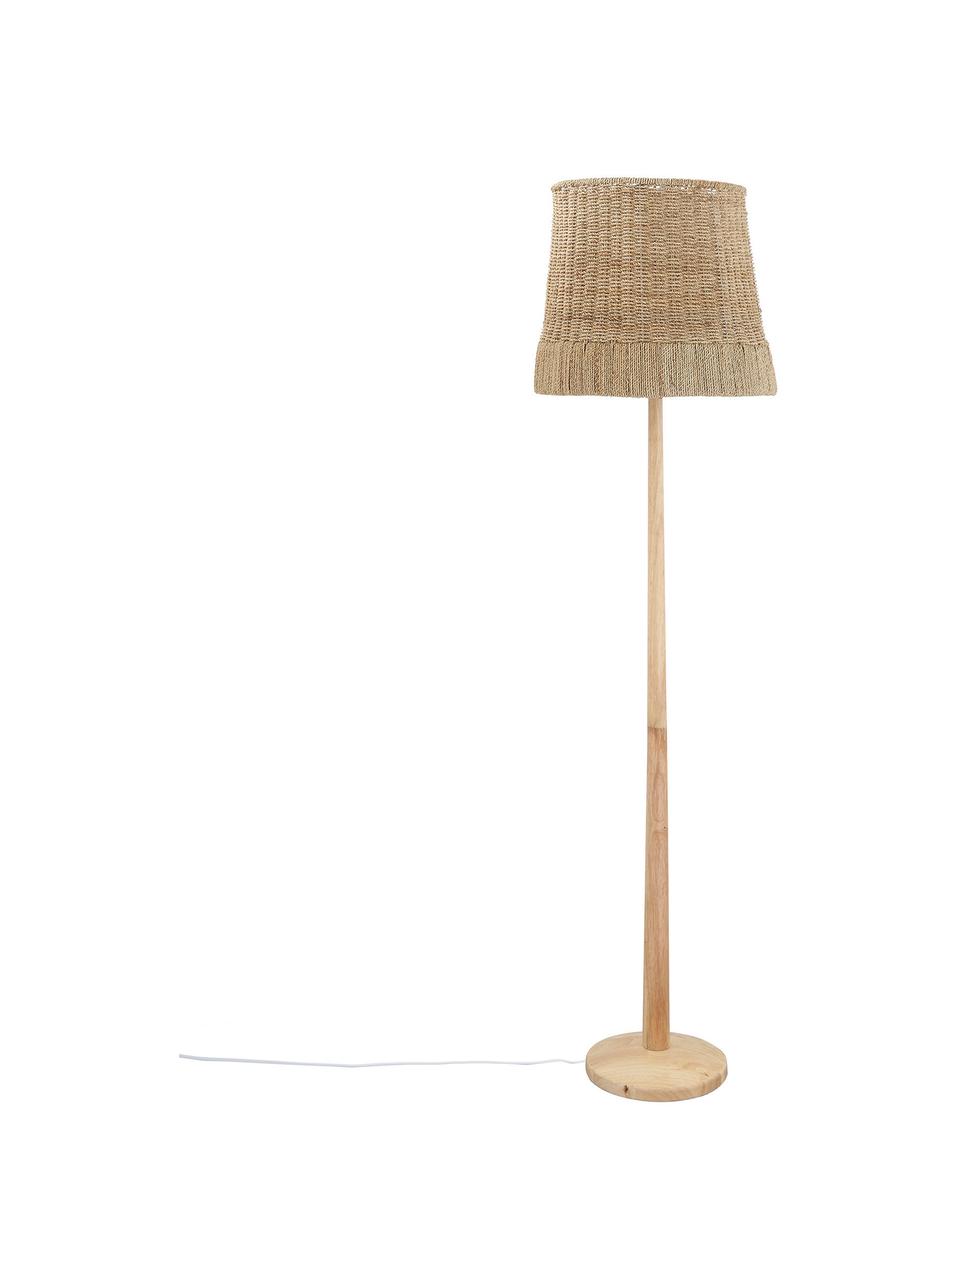 Stehlampe Ratto aus Gummibaumholz, Lampenschirm: Rattan, Lampenfuß: Gummibaumholz, Braun, Ø 40 x H 160 cm